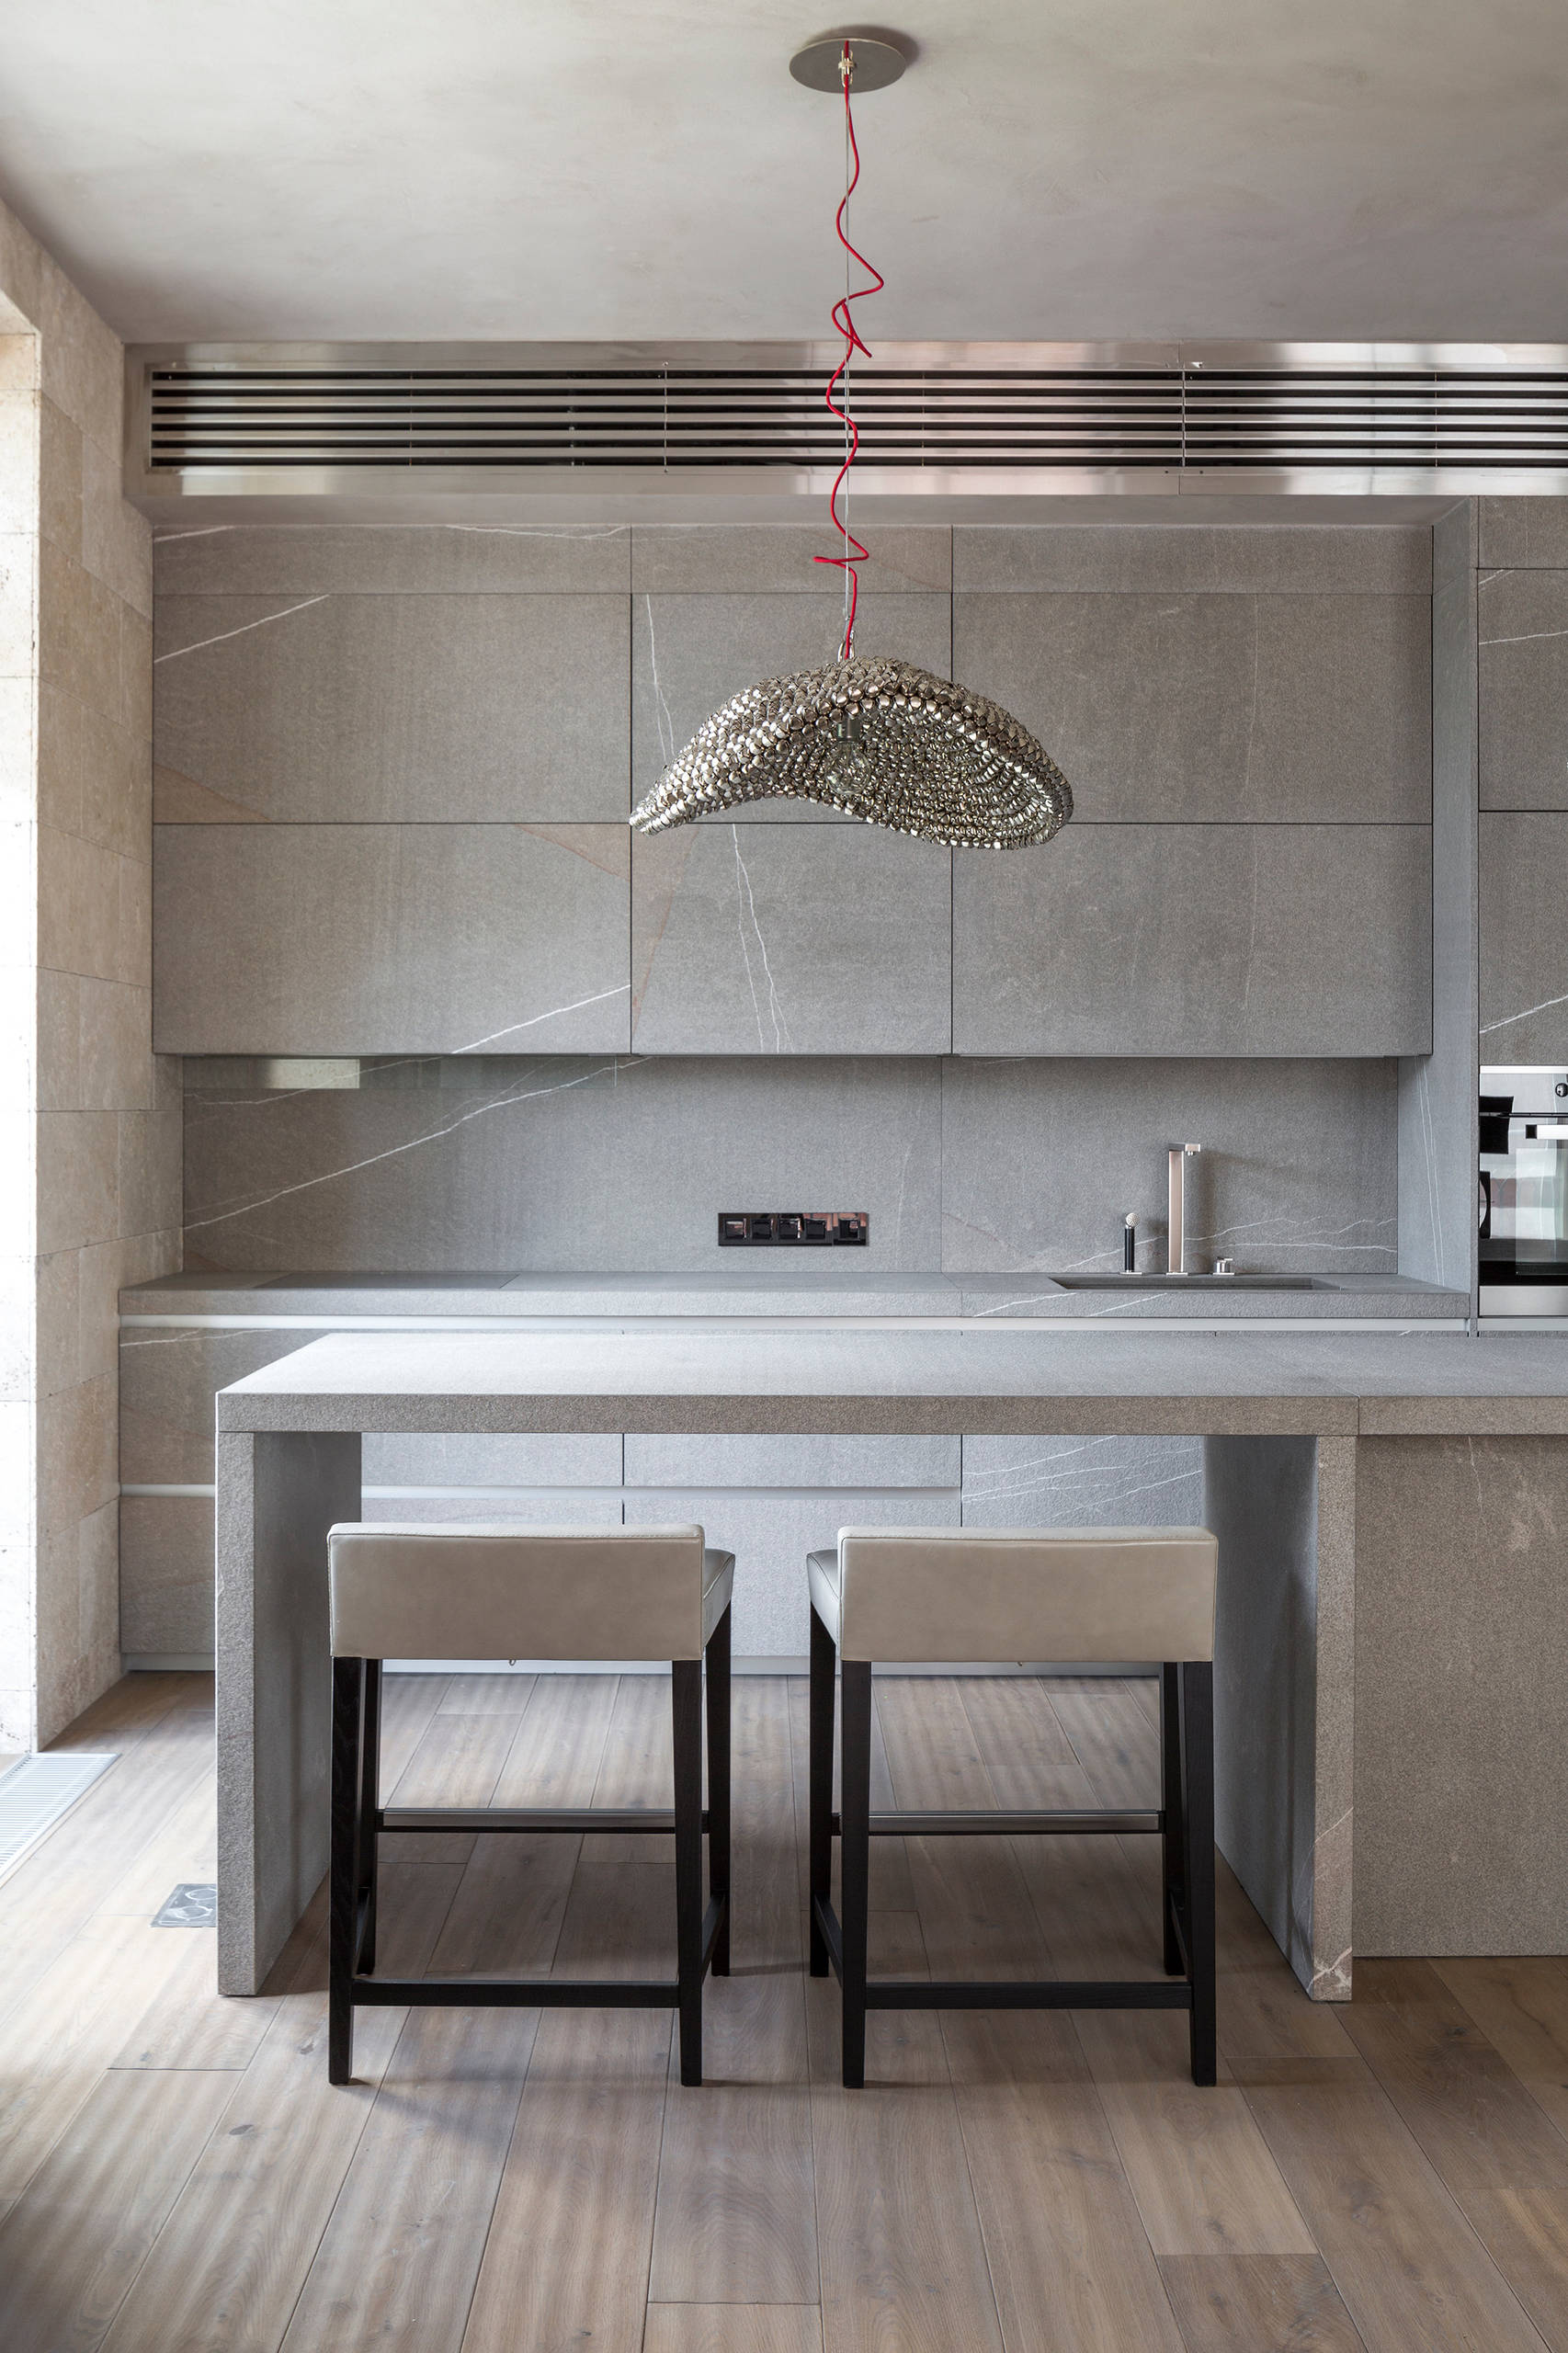 Beige Kitchen Aesthetic -  Finds  Home interior design, Home decor  kitchen, Minimalist kitchen essentials